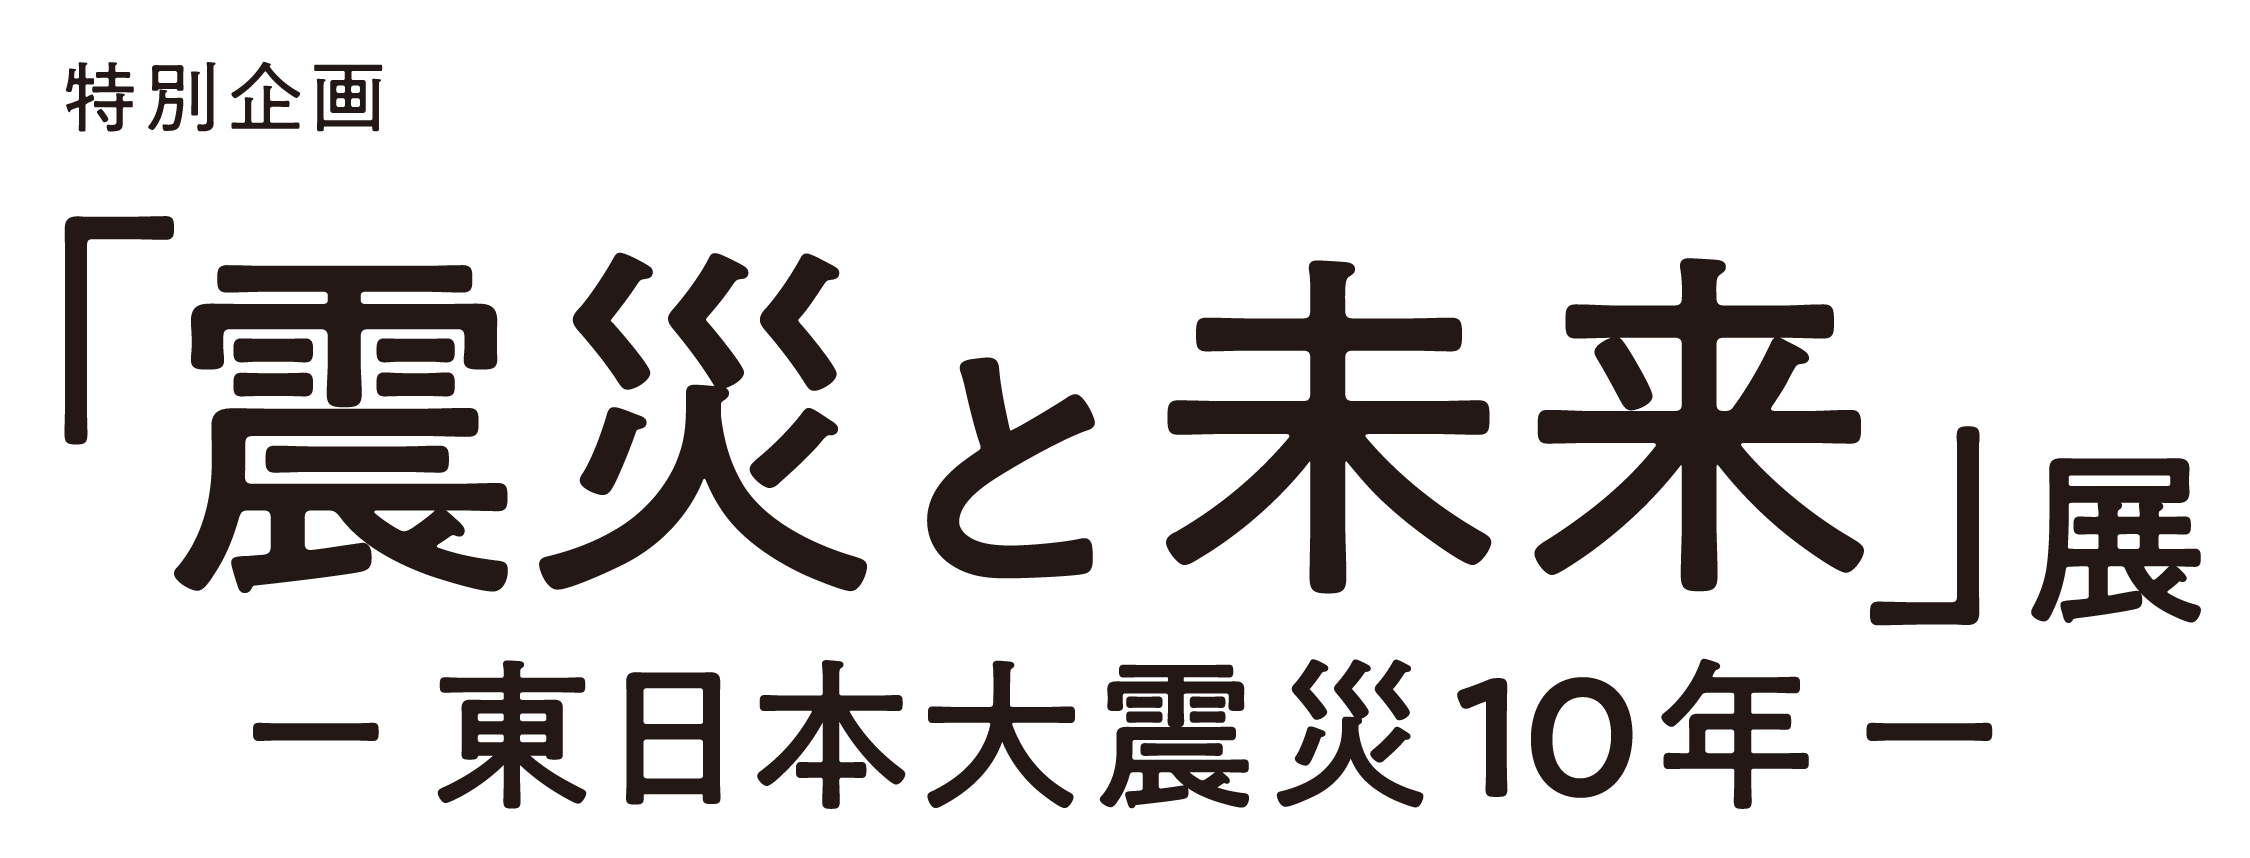 特別企画「震災と未来」展 〜東日本大震災10年〜 Online Tickets